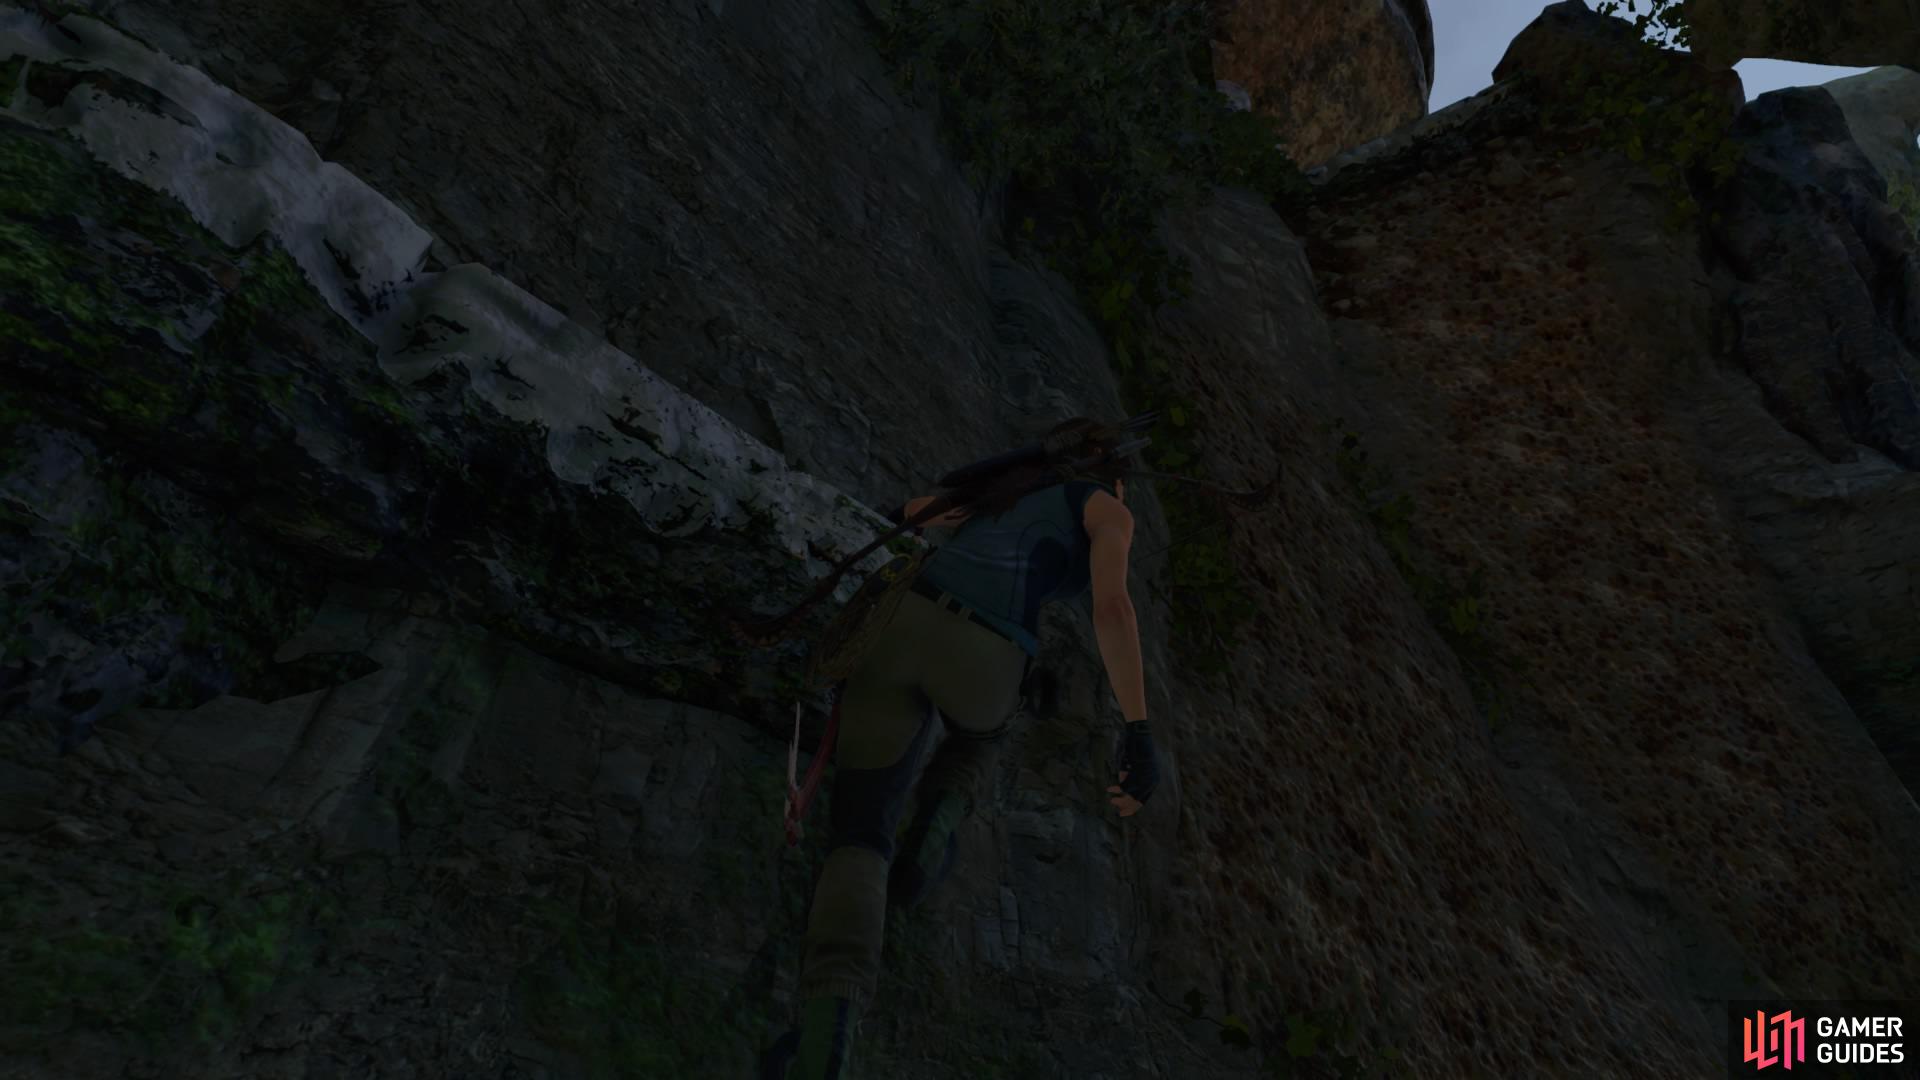 Climb the craggy walls